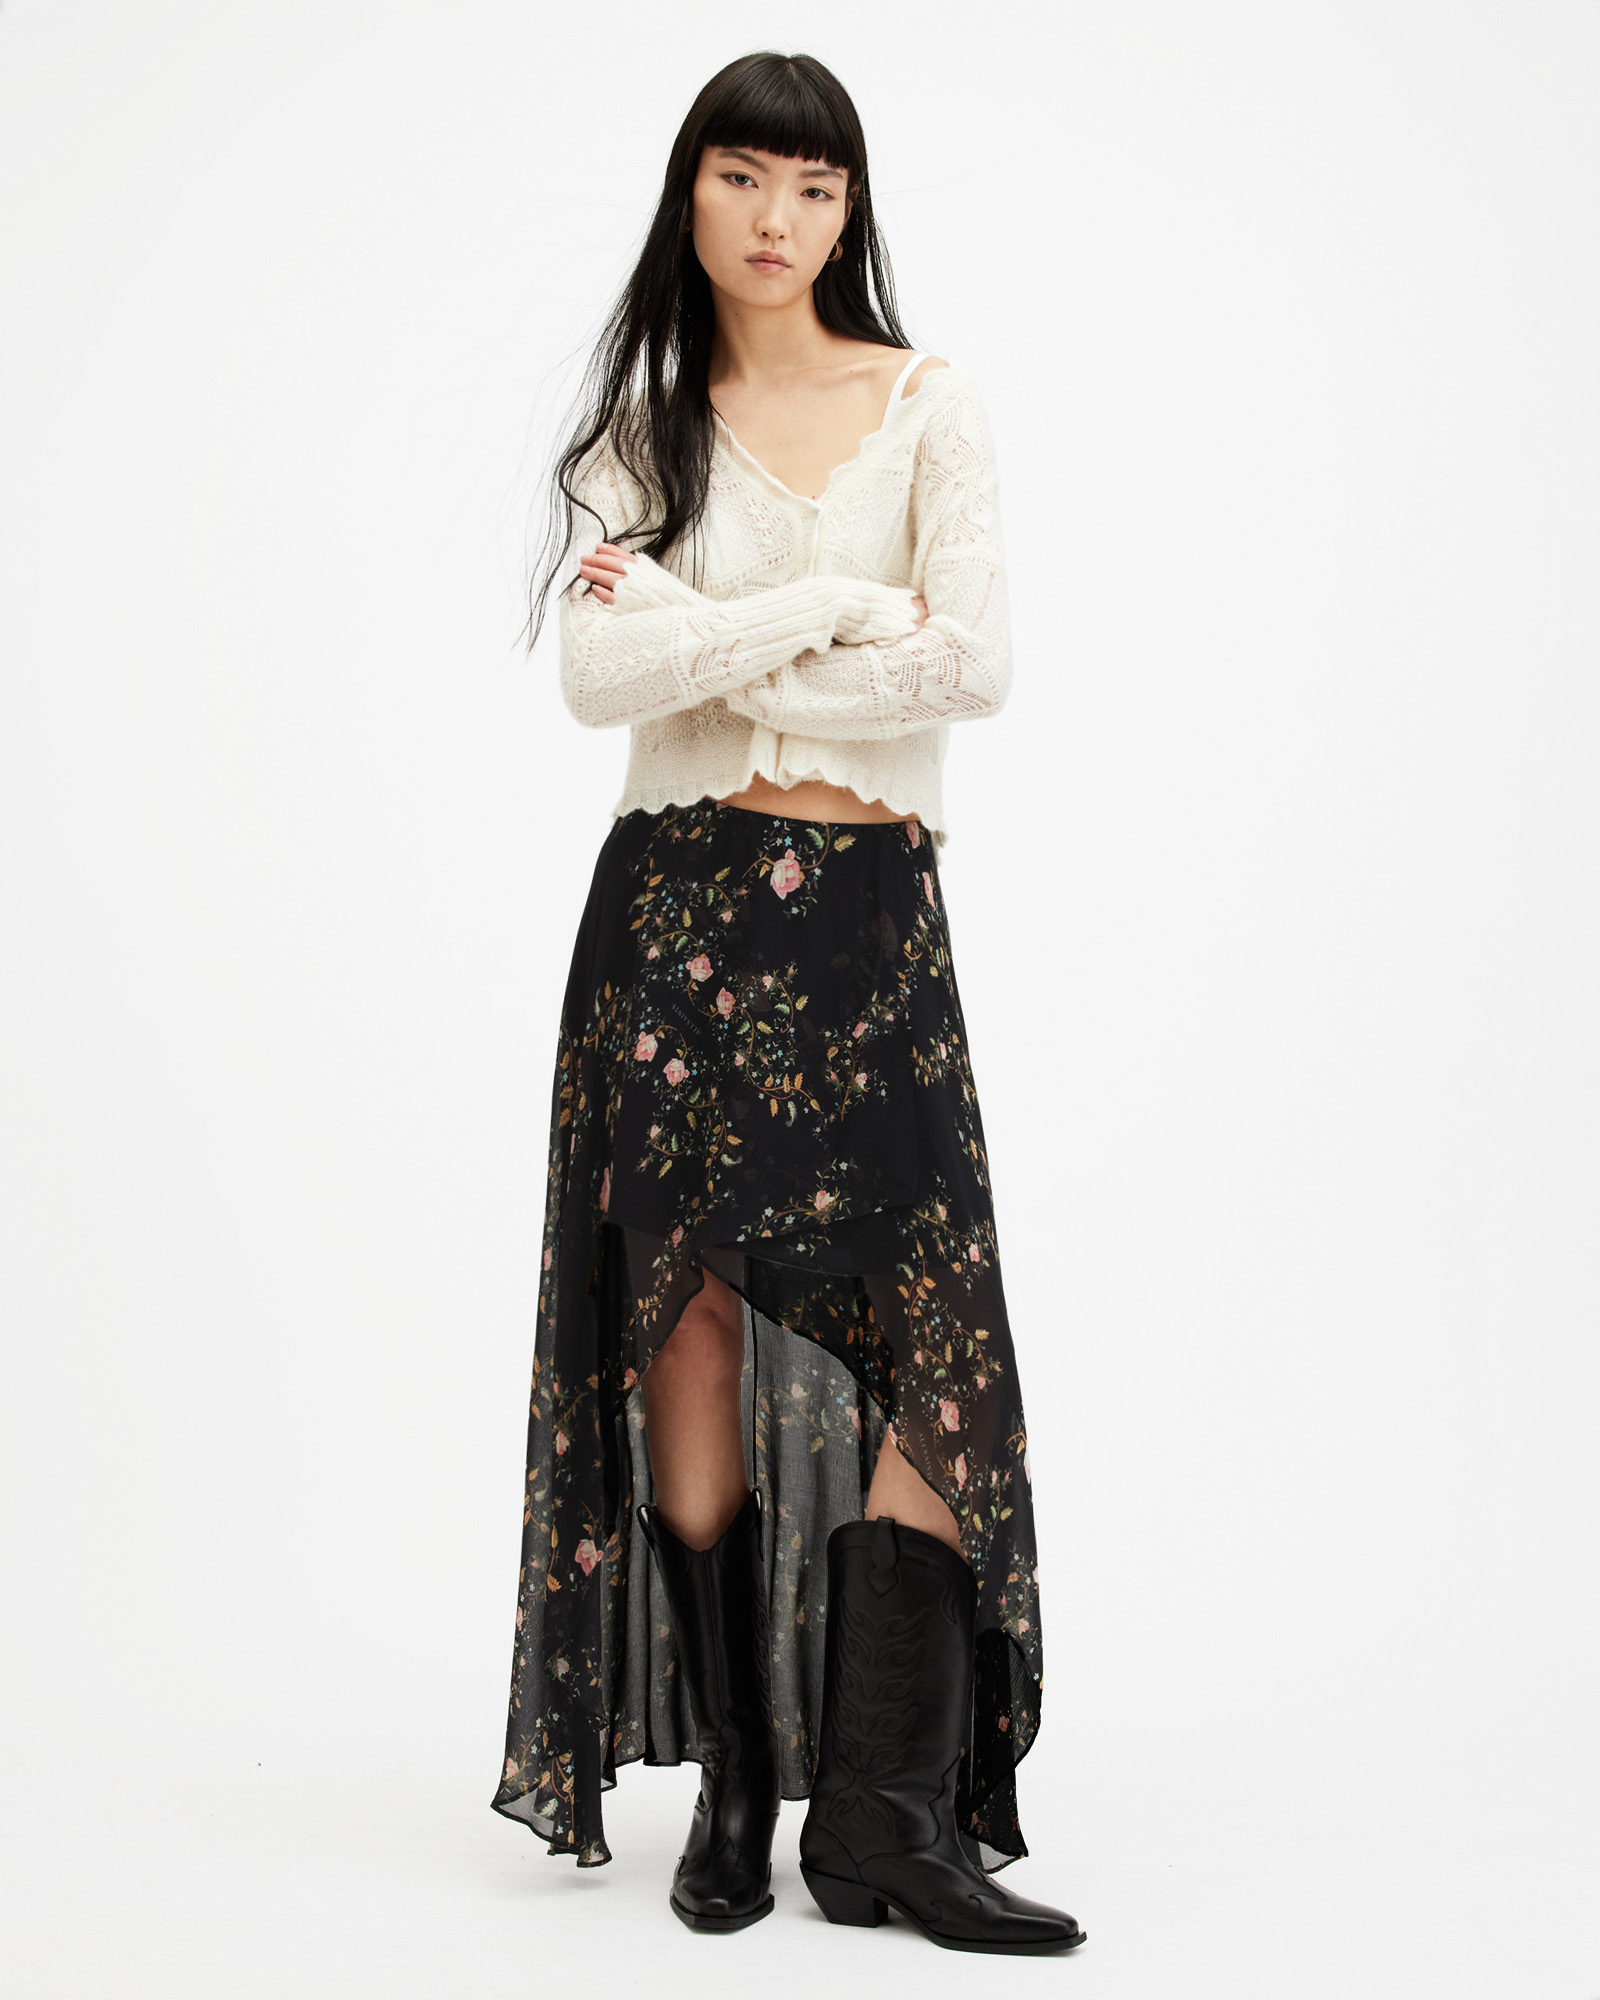 AllSaints Slvina Oto Floral Asymmetric Maxi Skirt